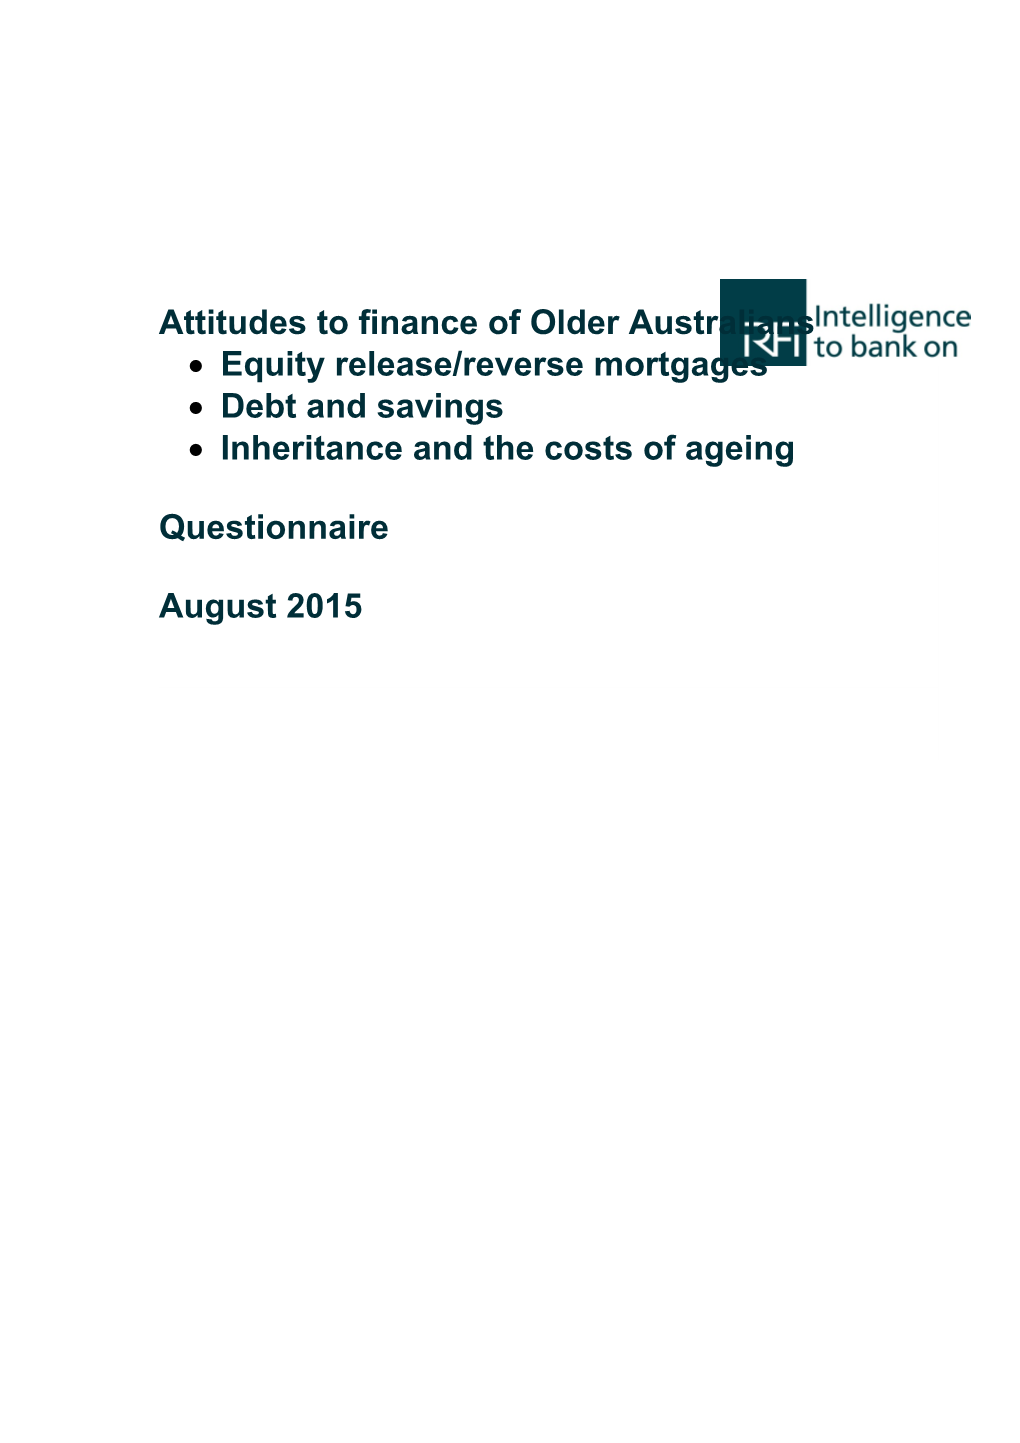 Survey Questionnaire - Housing Decisions of Older Australians - Commission Research Paper